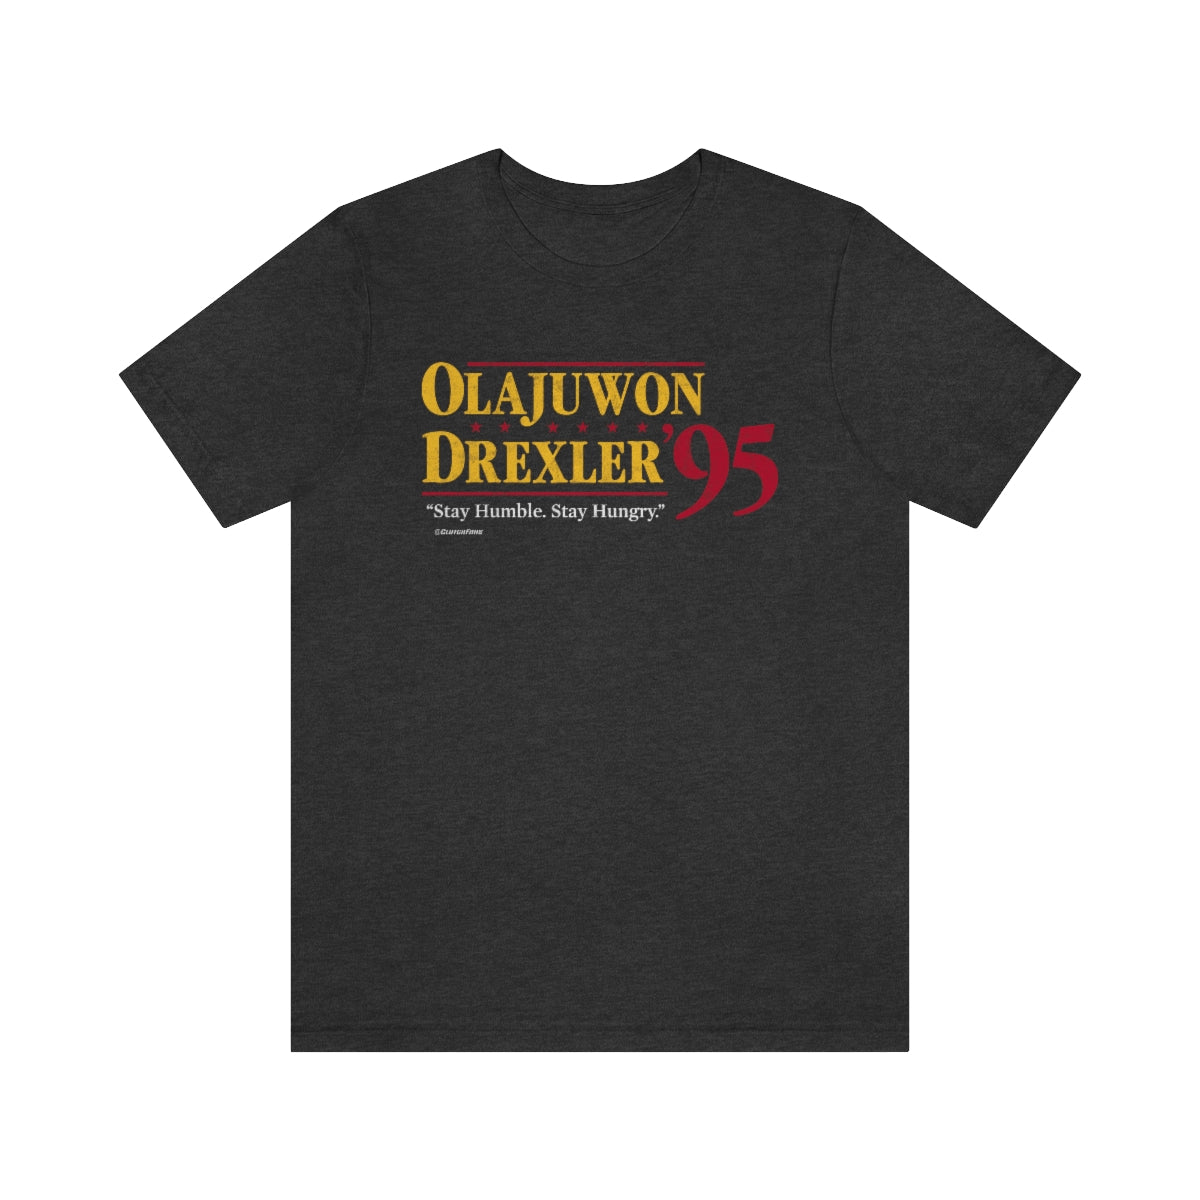 Olajuwon Drexler '95